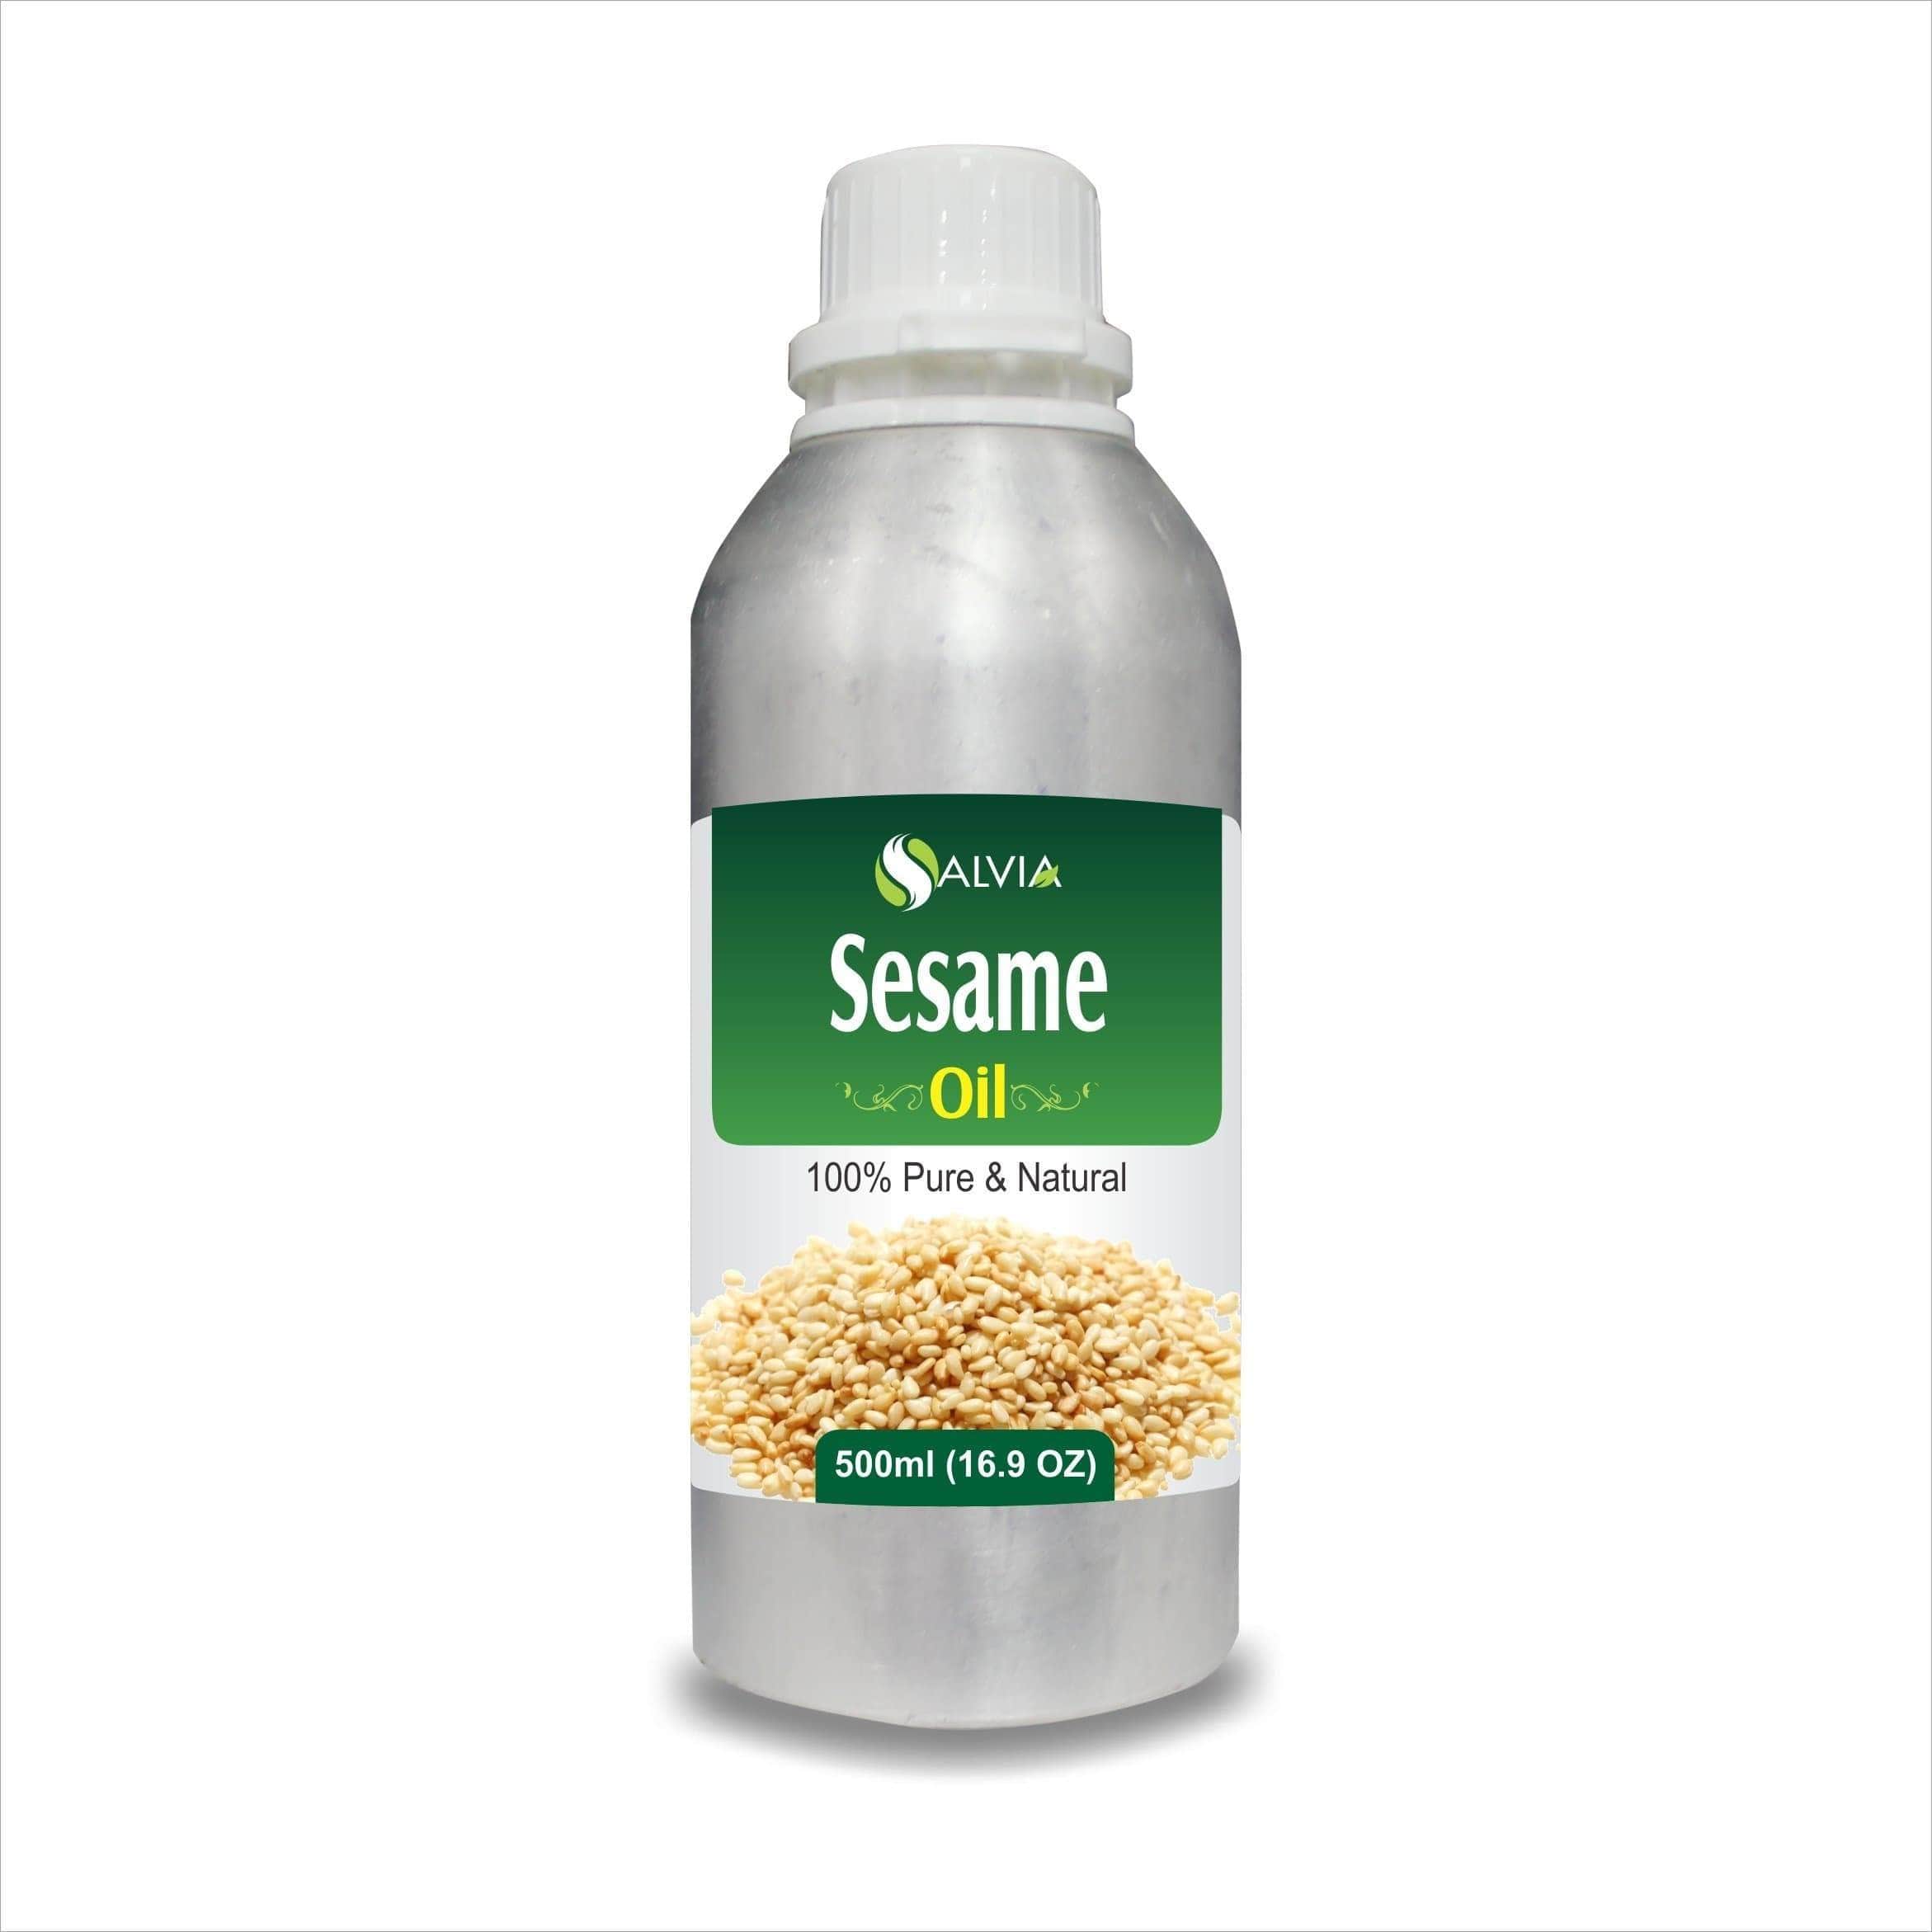 sesame oil substitute